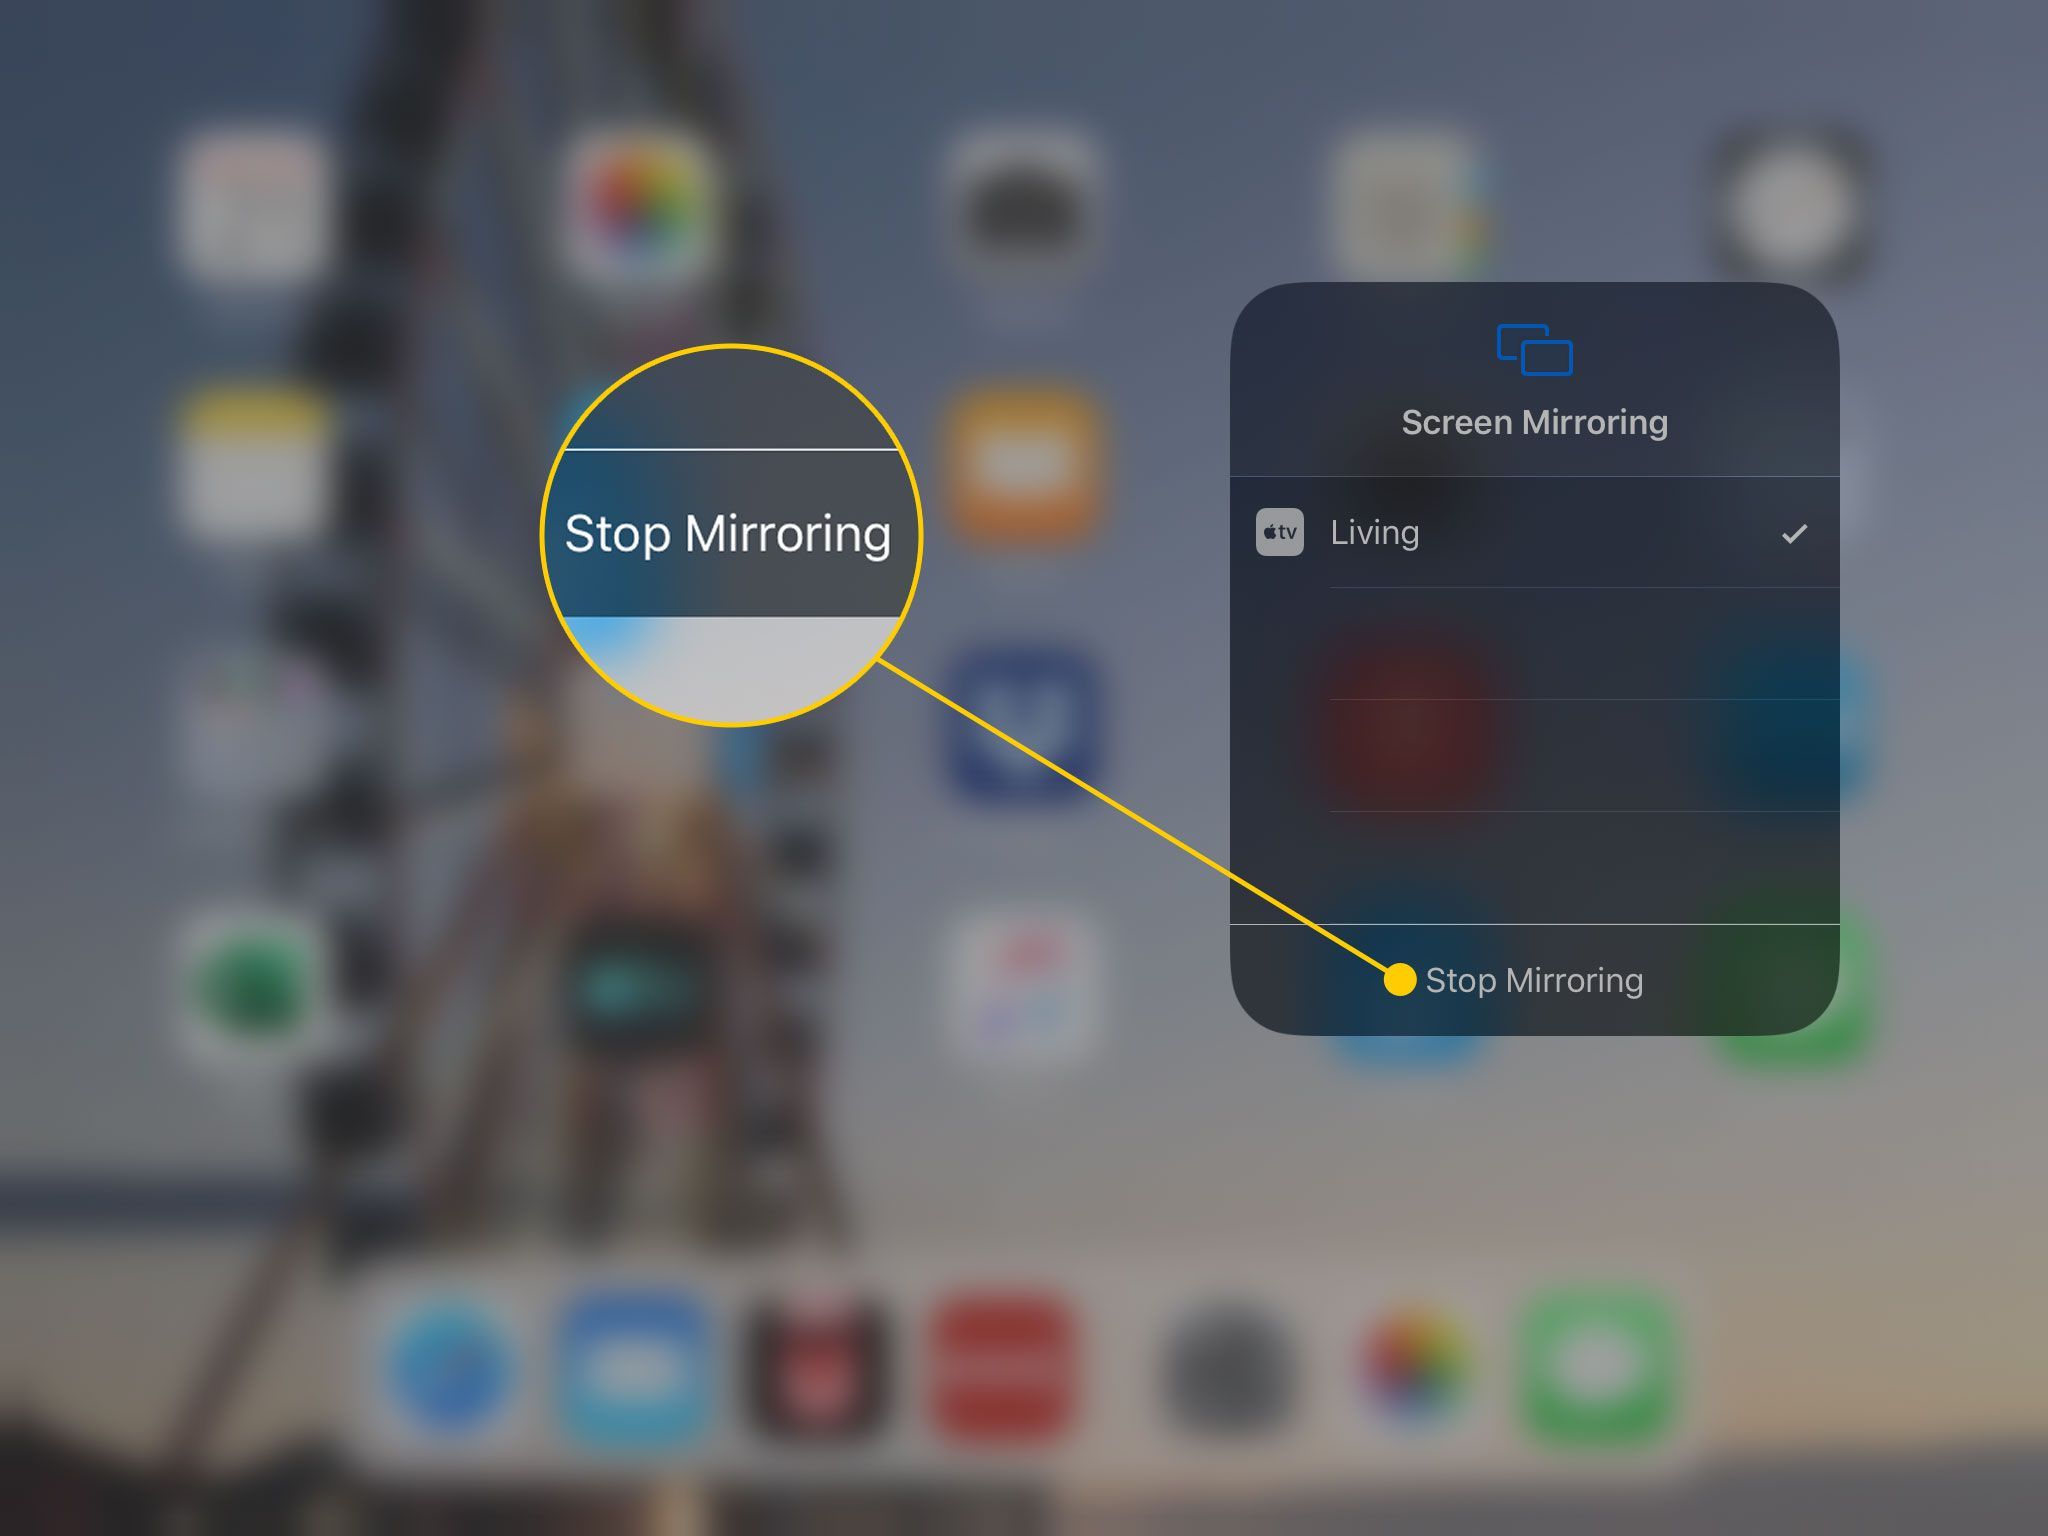 Панель «Мониторинг экрана» открывается на iPad с выделенной командой «Стоп зеркальное отображение»